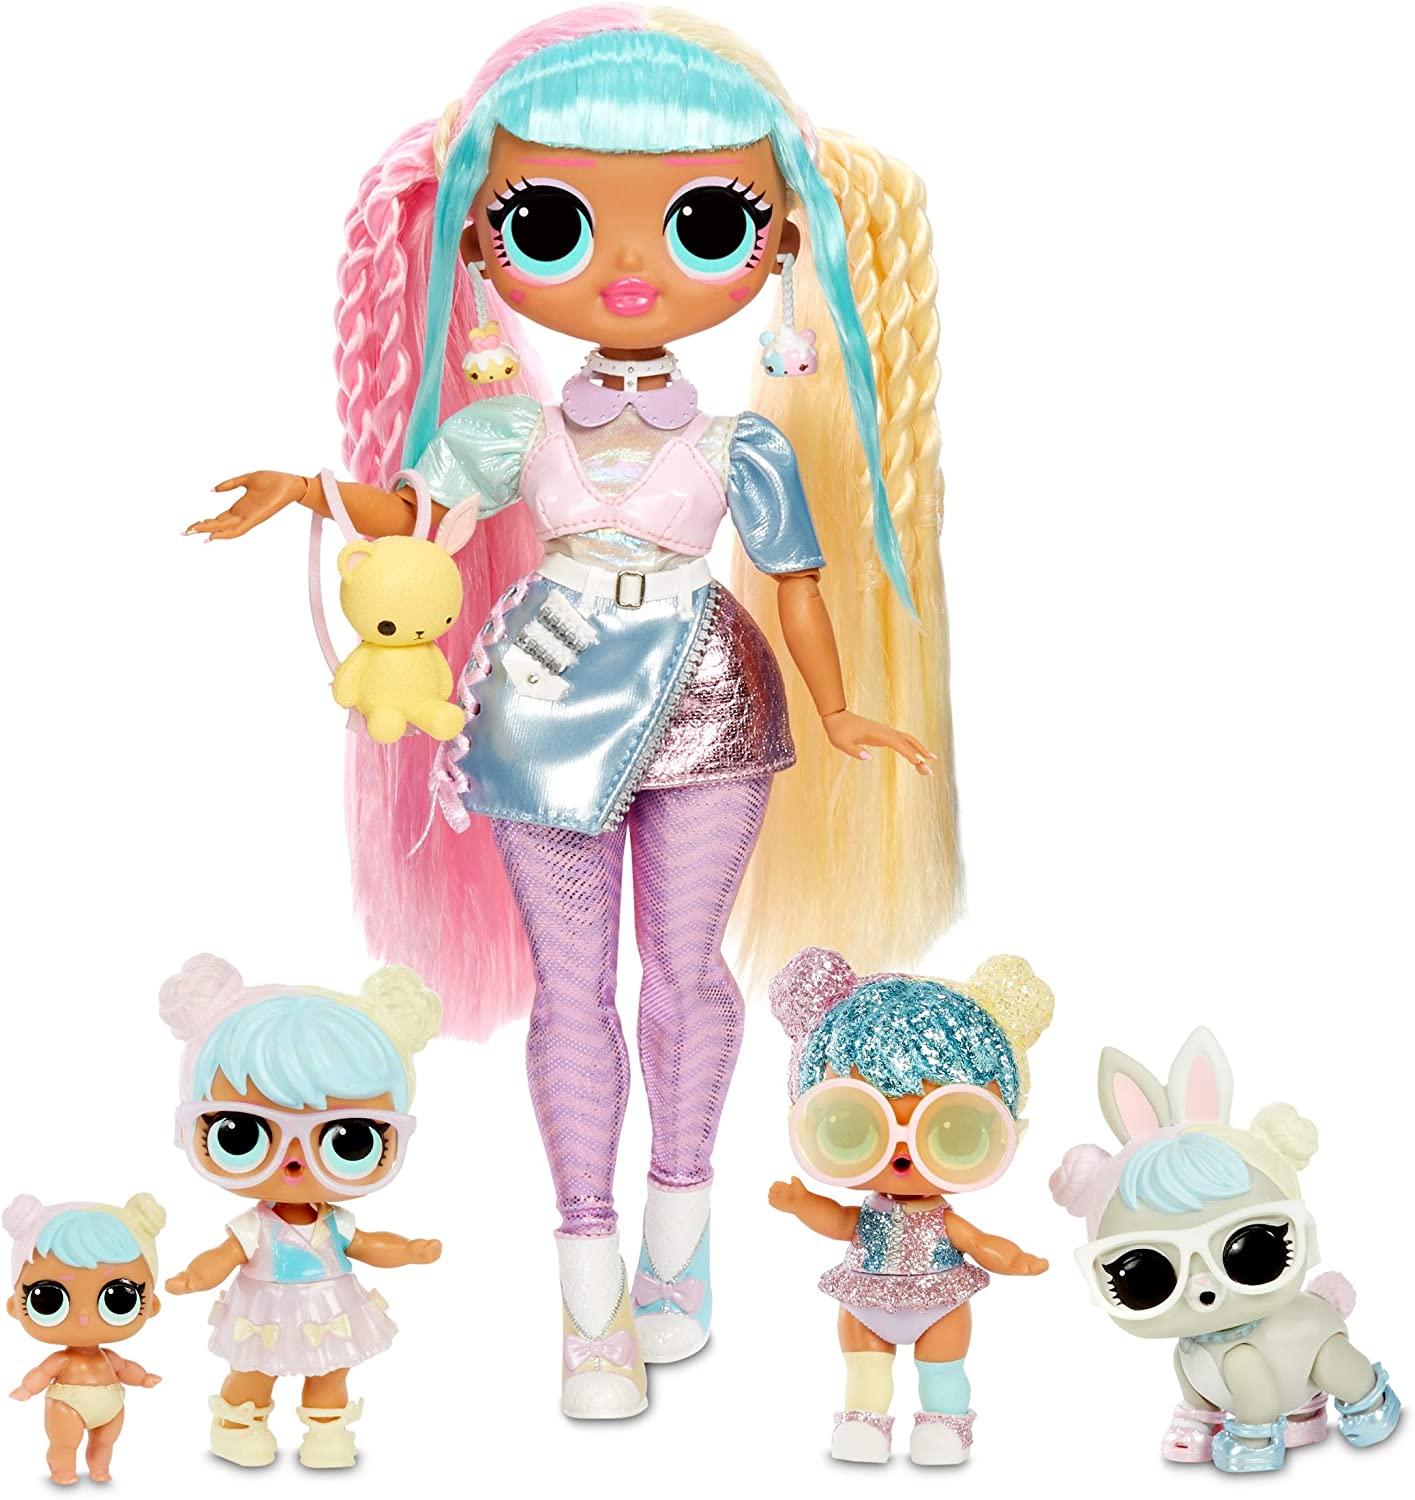 LOL Surprise OMG Bon Bon Family Pack - 2020 exclusive doll set 